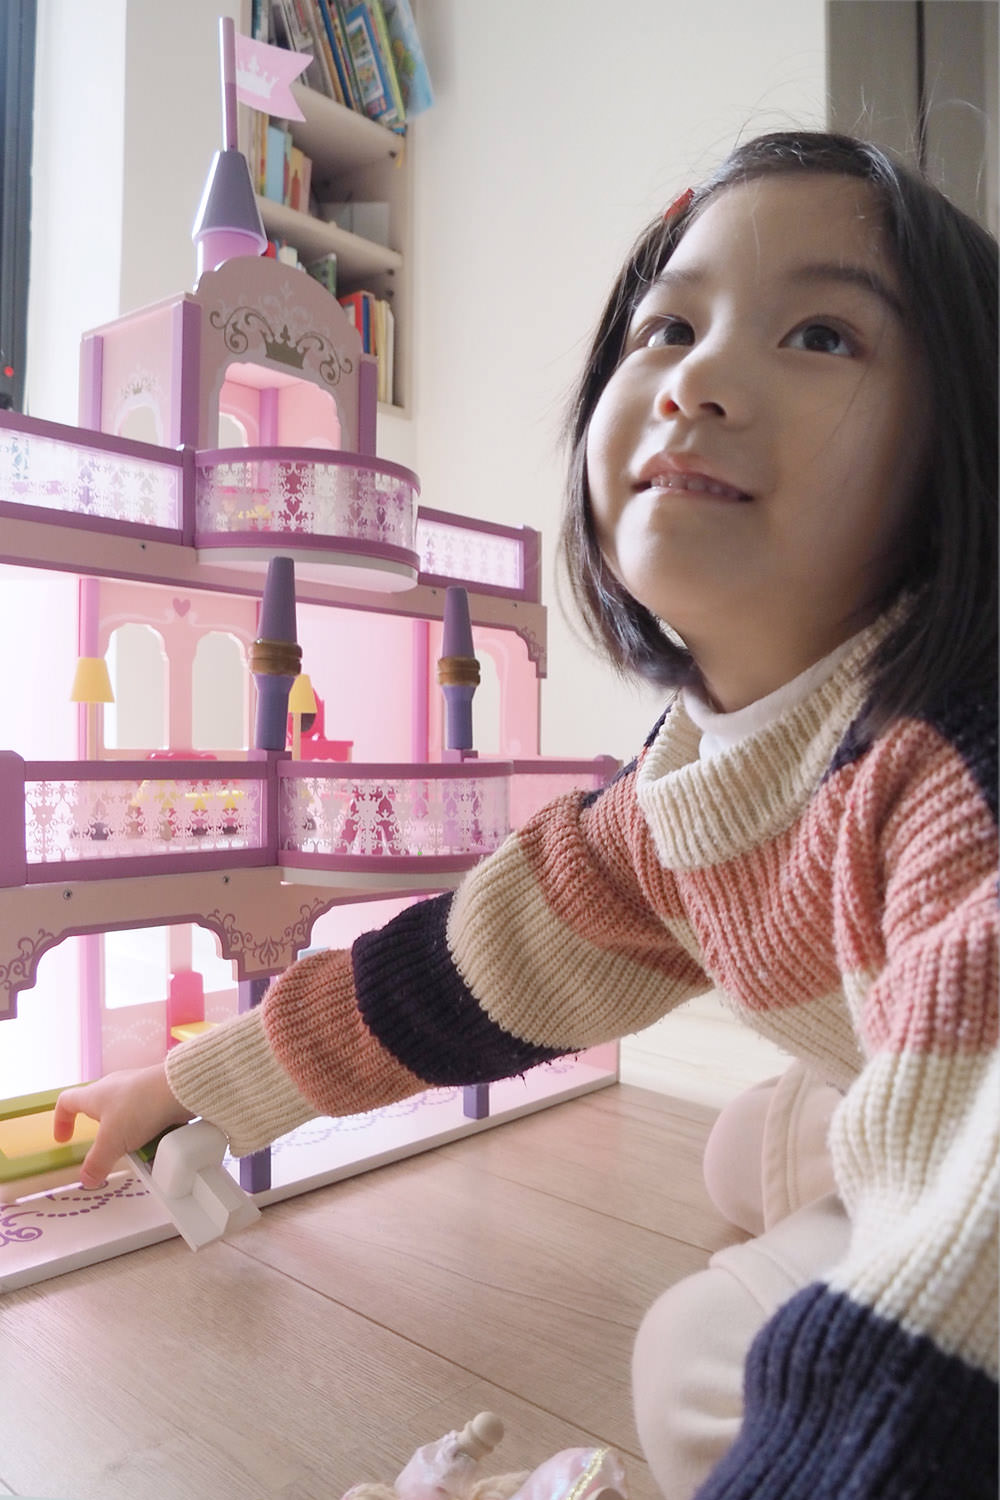 [啾團] Mentari幸福城堡女孩們看到都會瘋狂及尖叫的超美質感木製公主風洋娃娃屋(Mentari木製玩具全系列)